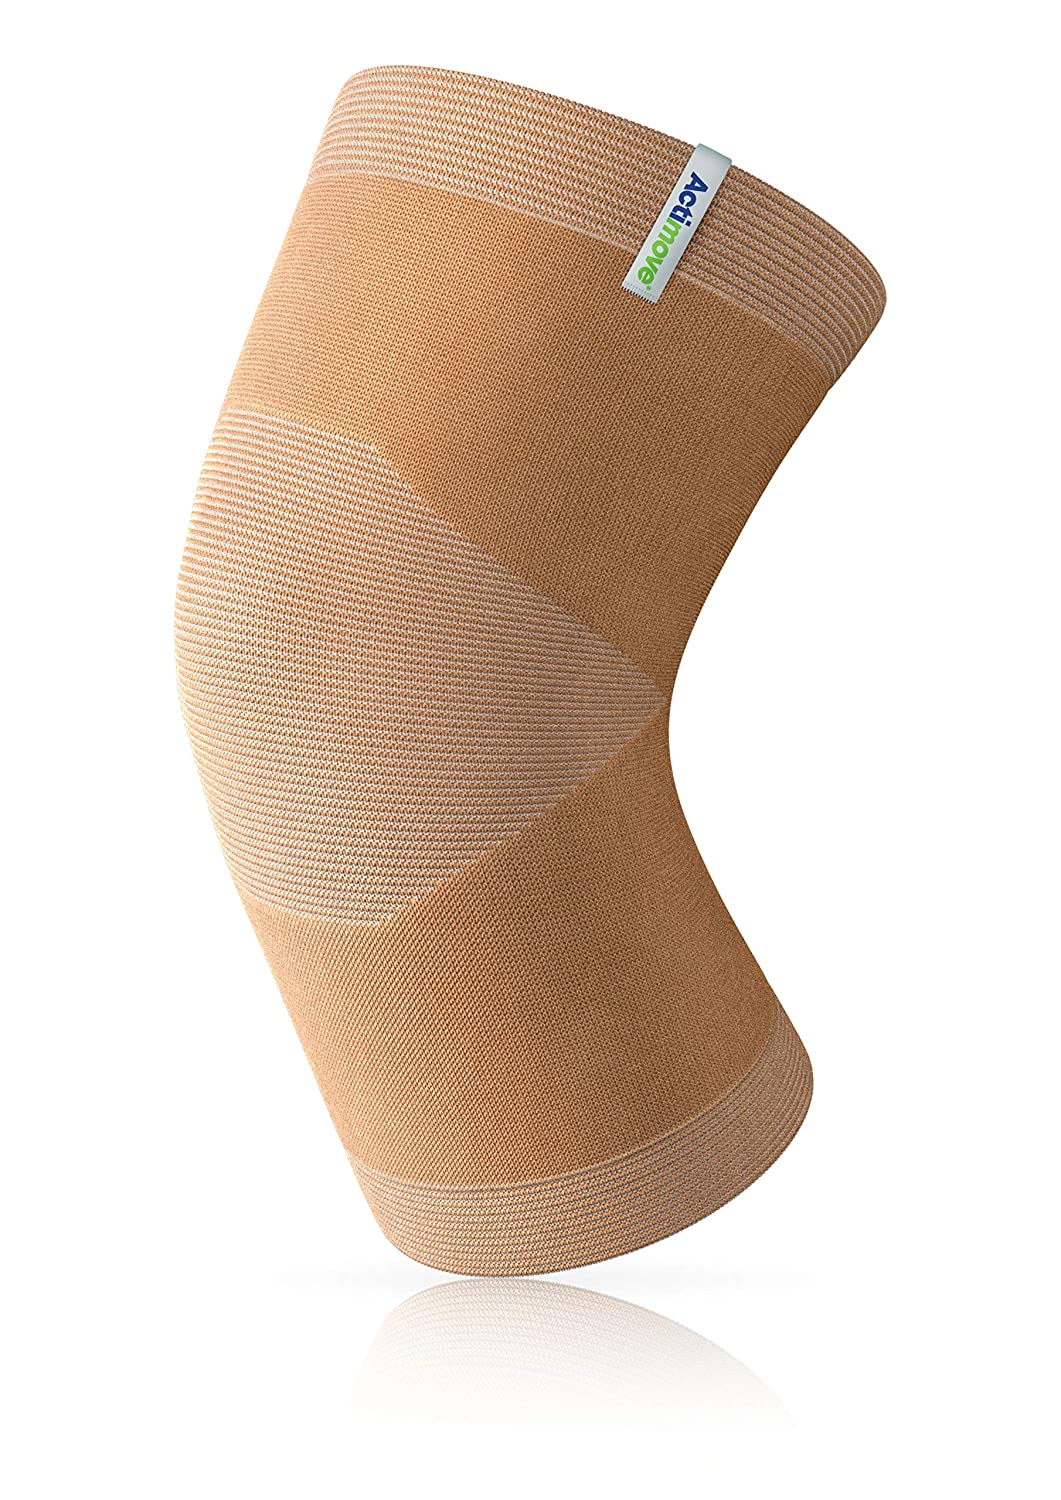 Actimove Arthritis Pain Relief Support, Knee, Xxl, Beige - Ea/1